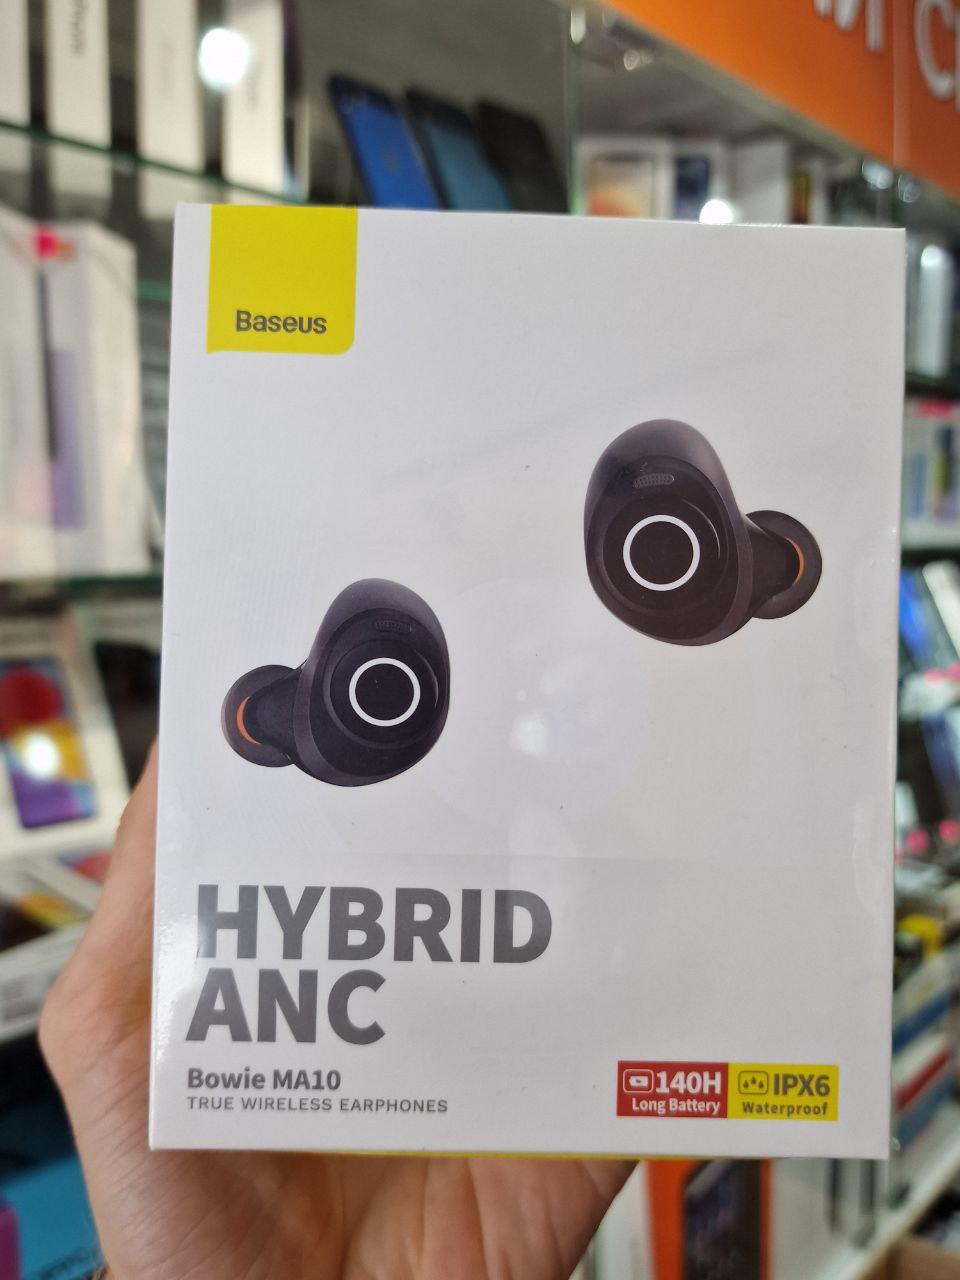 Baseus HYBRID ANC BOWIE MA10 True Wireless Earphones